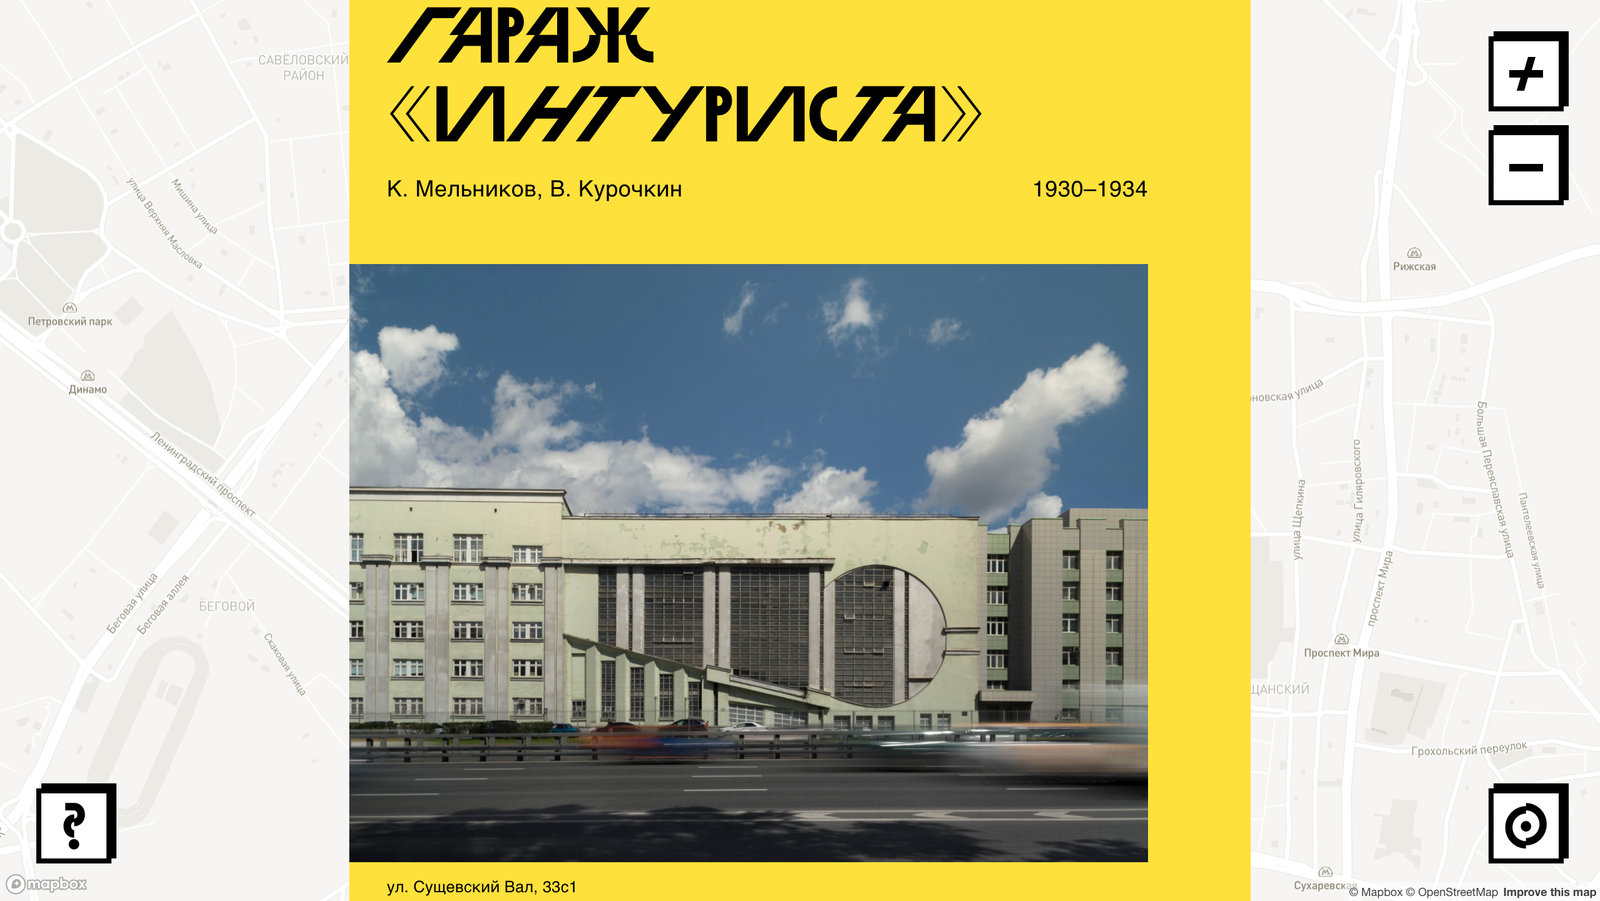 “Бахметьевский гараж и вокруг него” виртуальная карта архитектуры авангарда